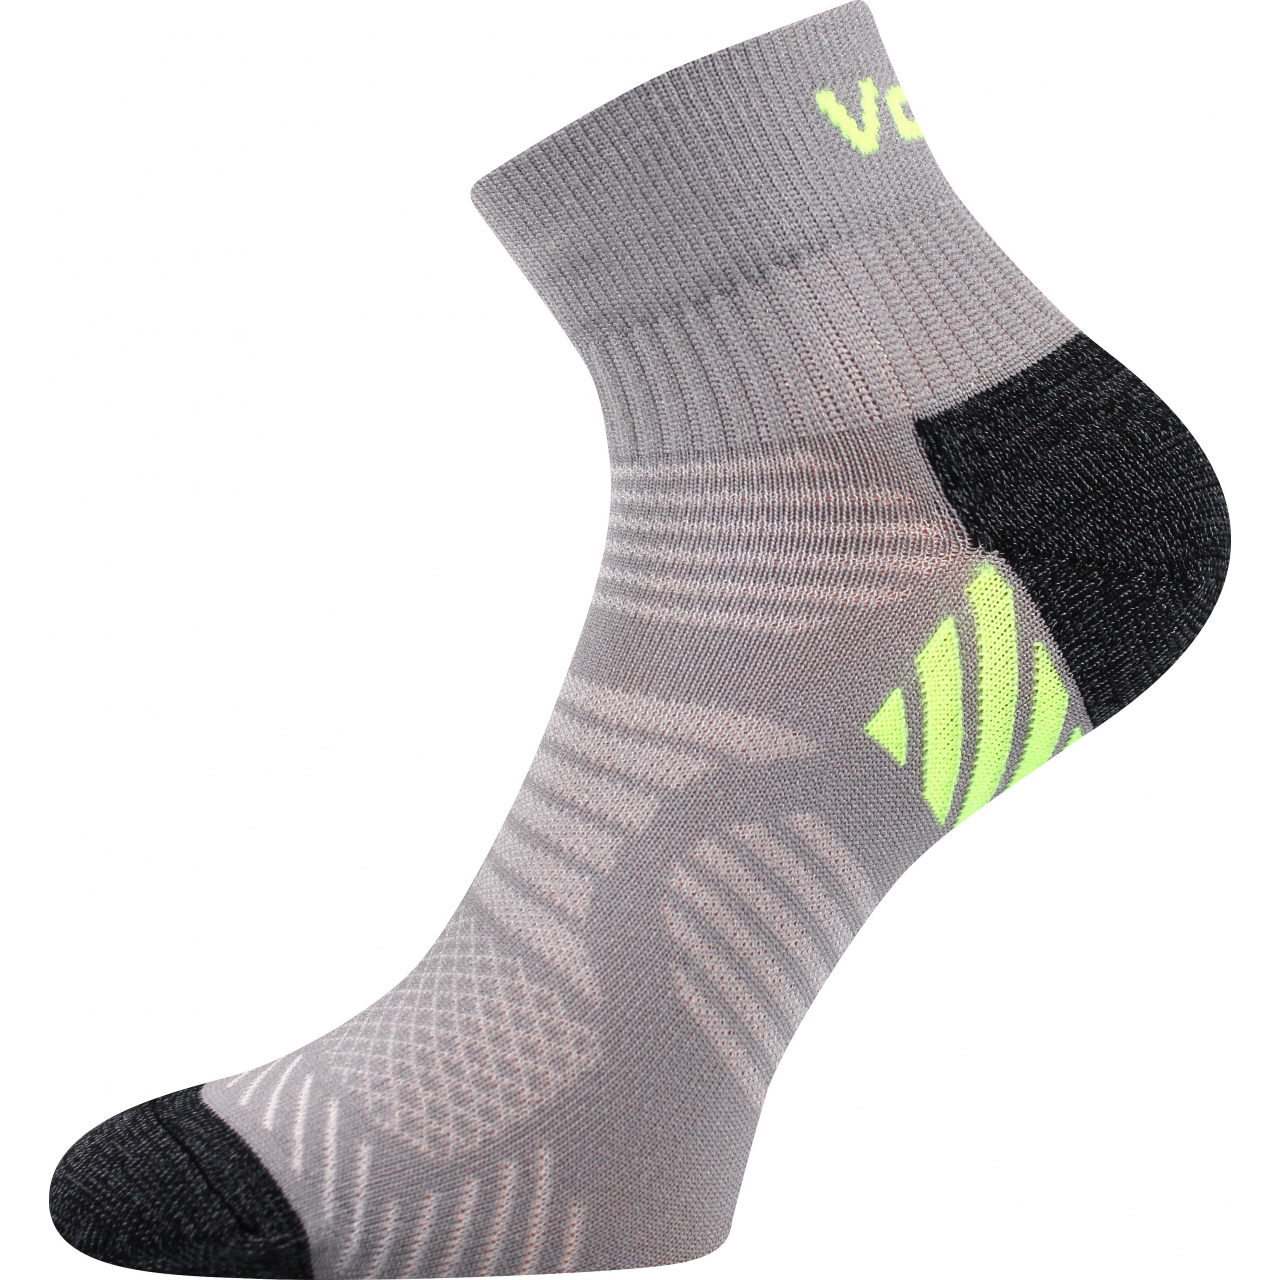 Ponožky unisex sportovní Voxx Raymond - šedé-zelené, 39-42